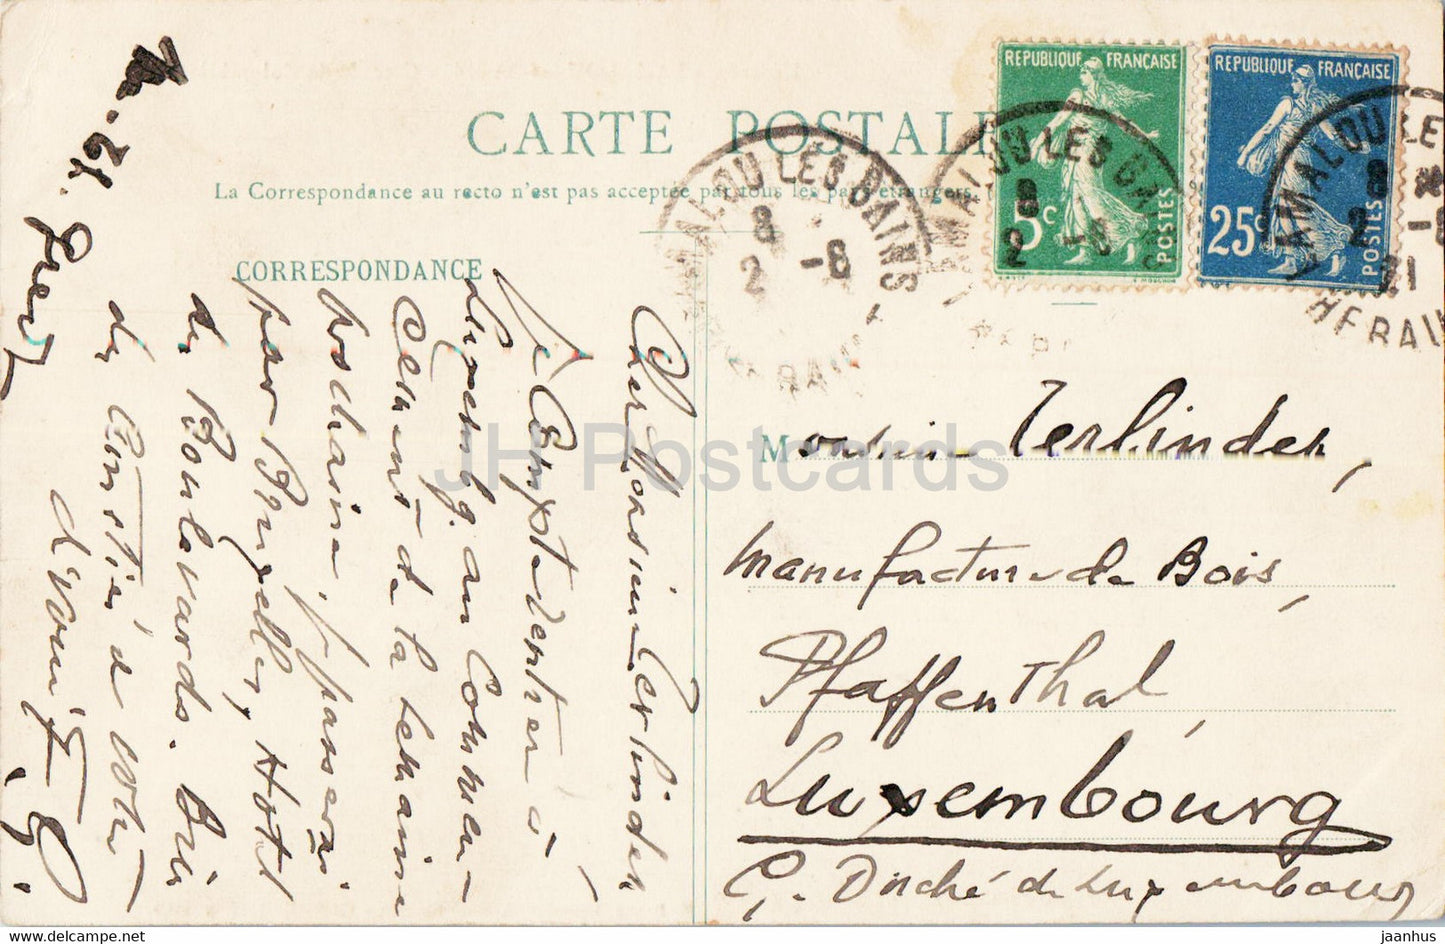 Lamalou les Bains - Cascade de Colombieres - carte postale ancienne - 1921 - France - occasion